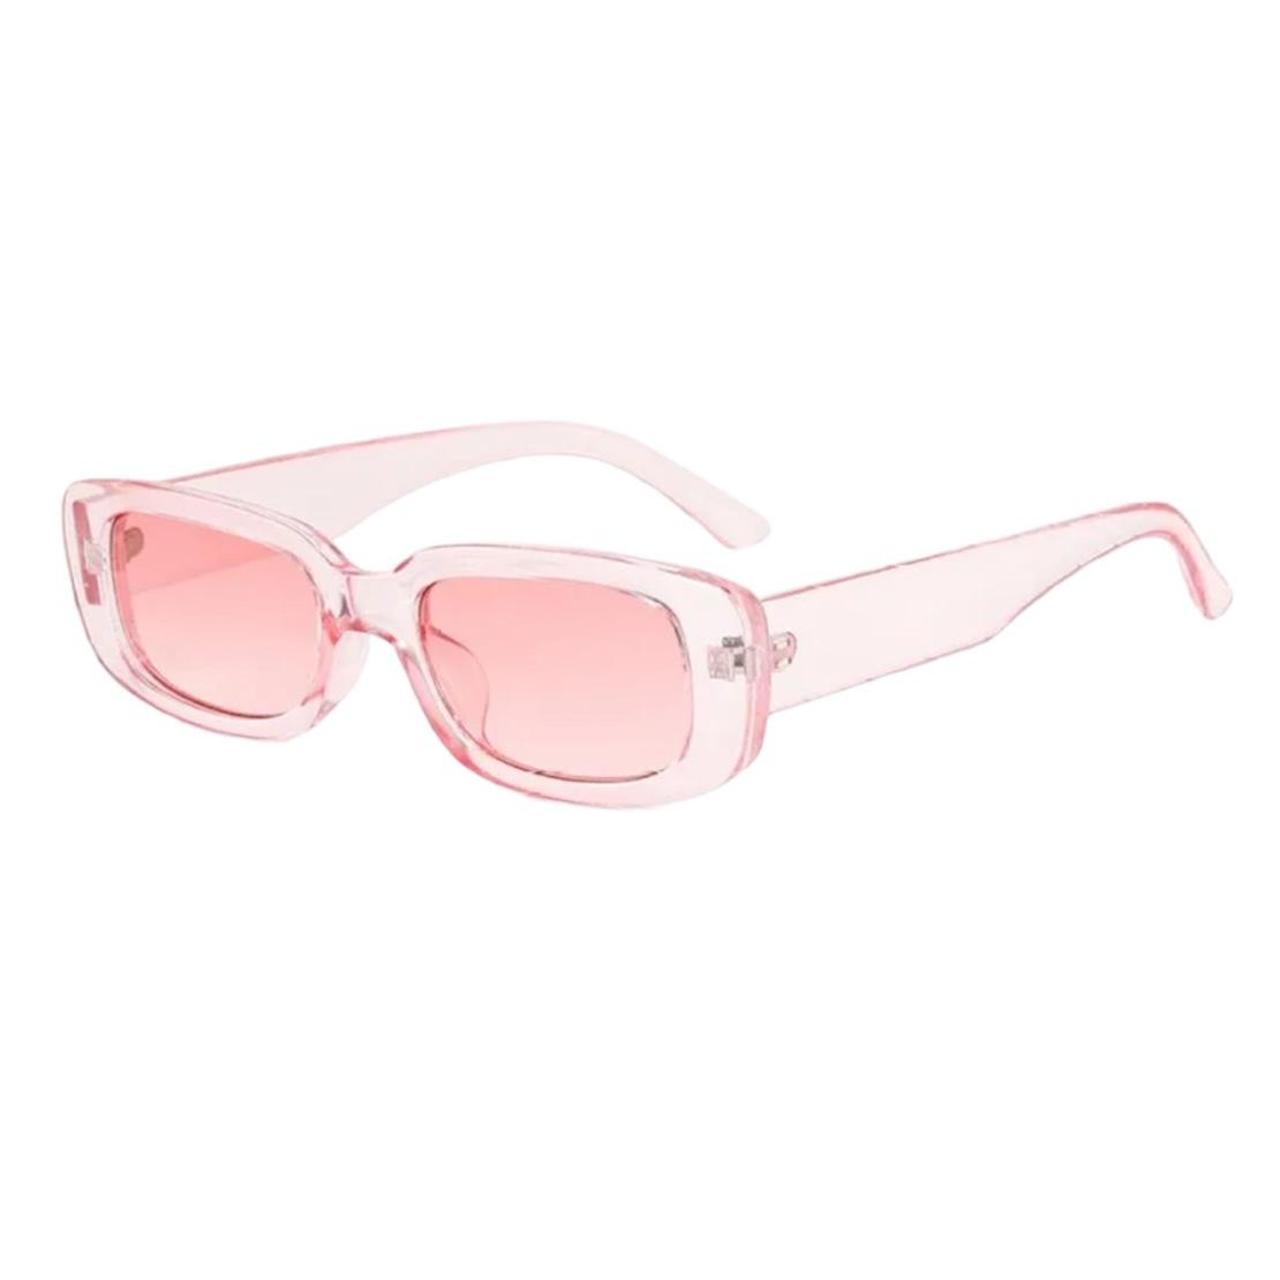 Pink square lens y2k sunglasses Pink clear frame... - Depop